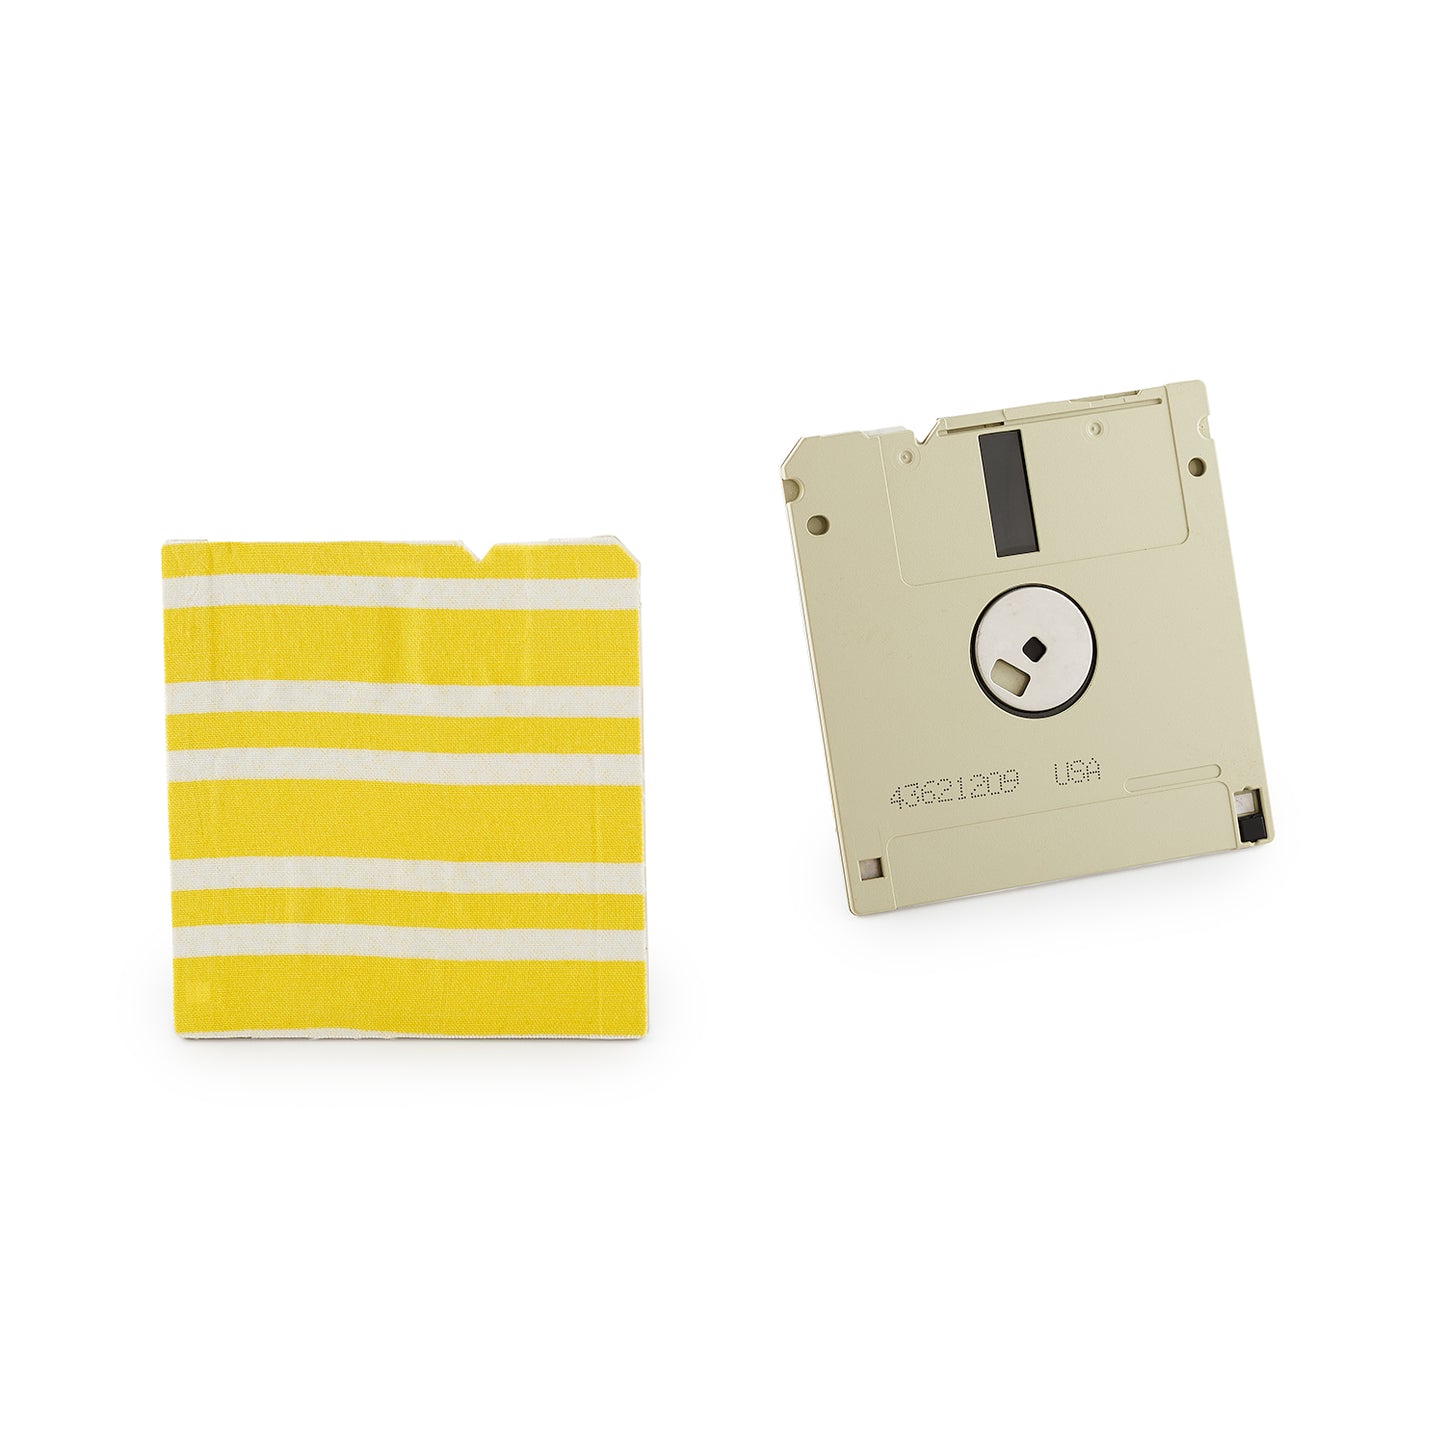 Saffron Yellow & White - Floppy Disk Coaster Set of 2